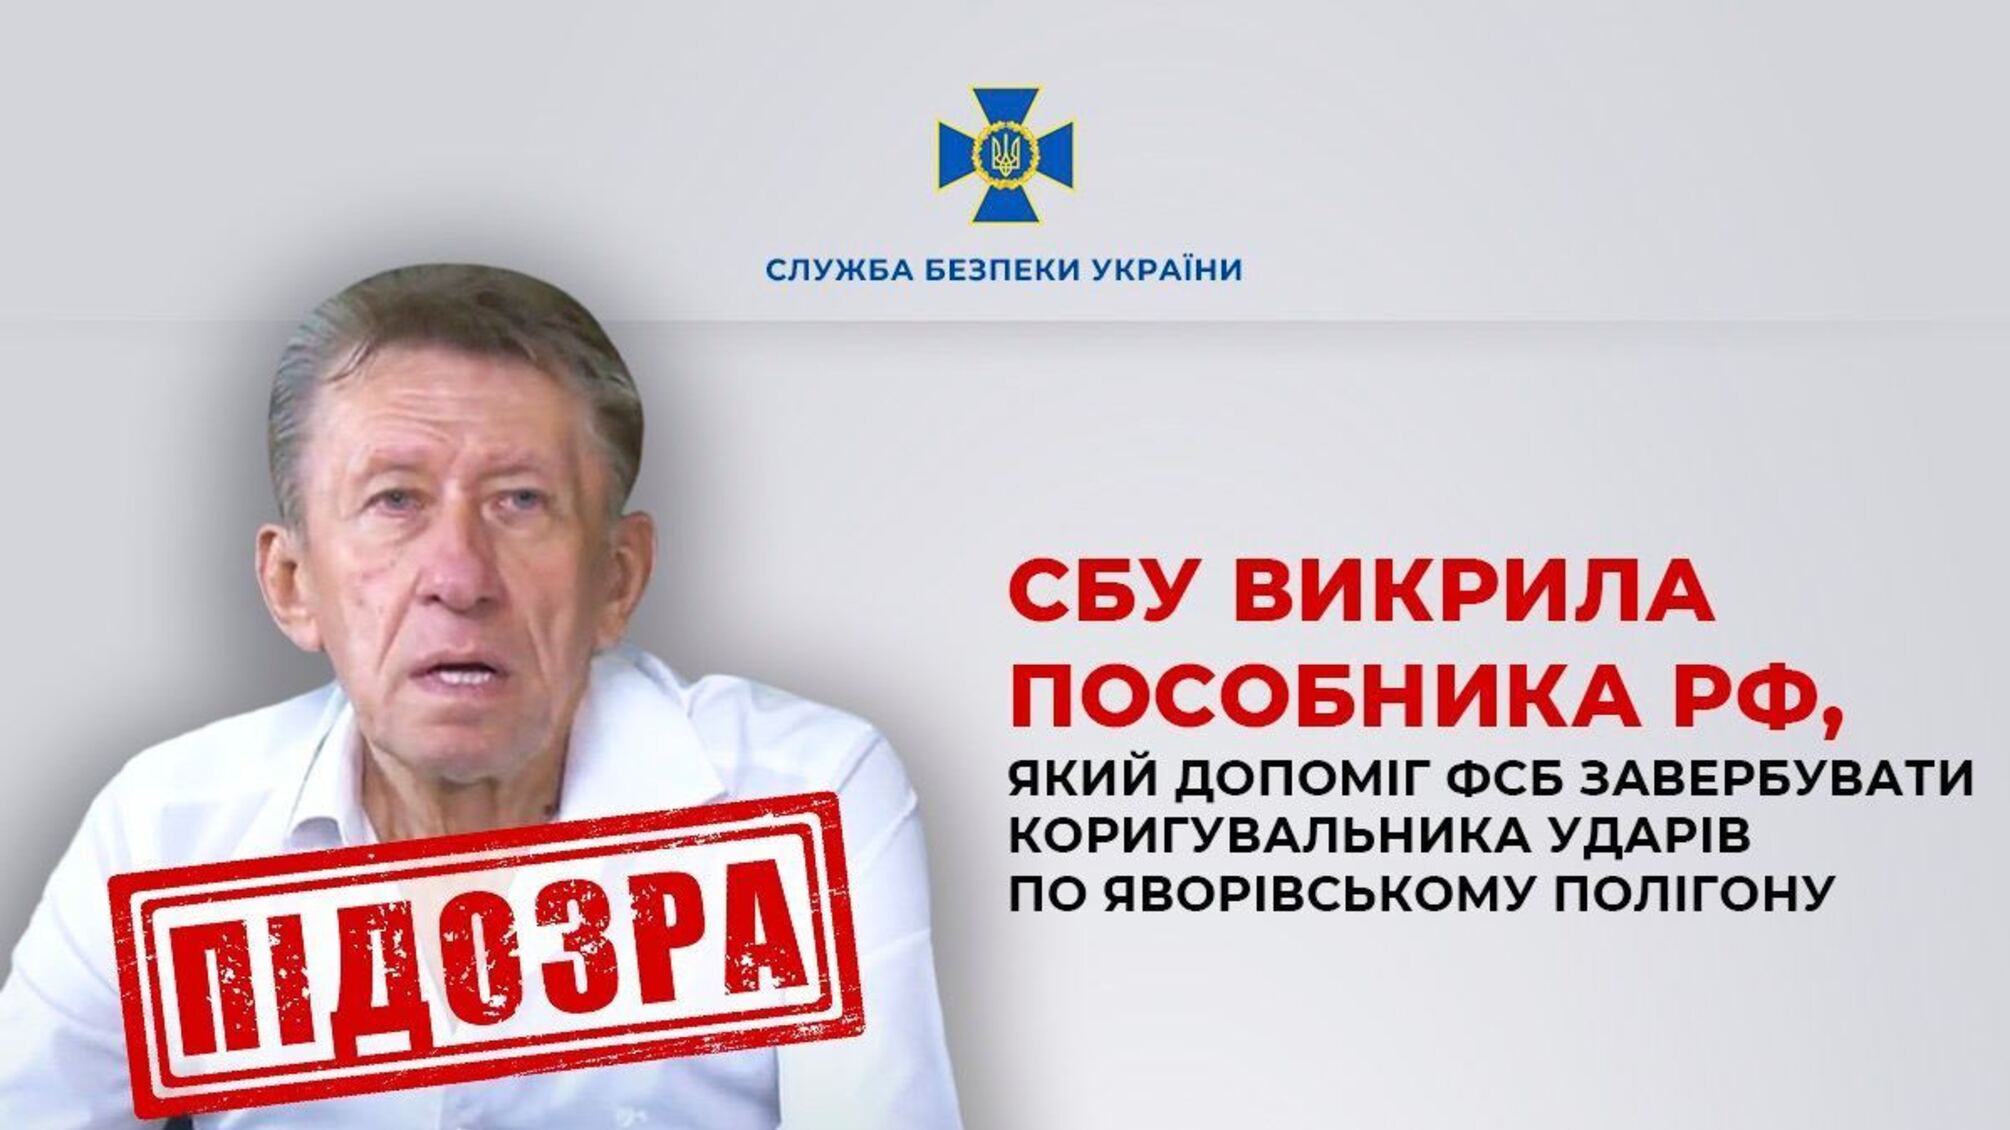 Содействовал удару по Яворивскому полигону: СБУ задержала агента российской ФСБ